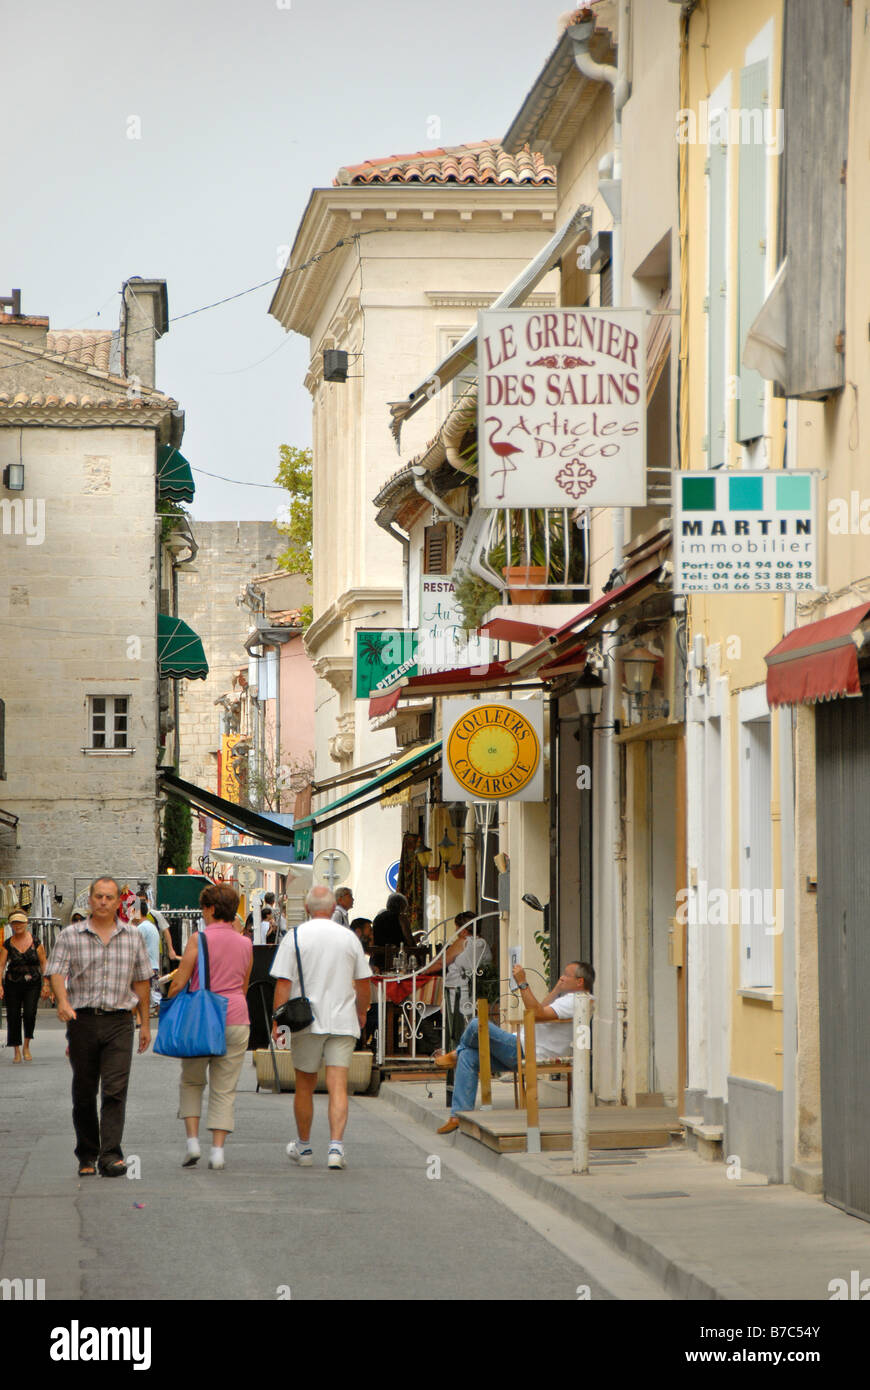 Les touristes dans le vieux village, Aigues Mortes, Camargue, France, Europe Banque D'Images